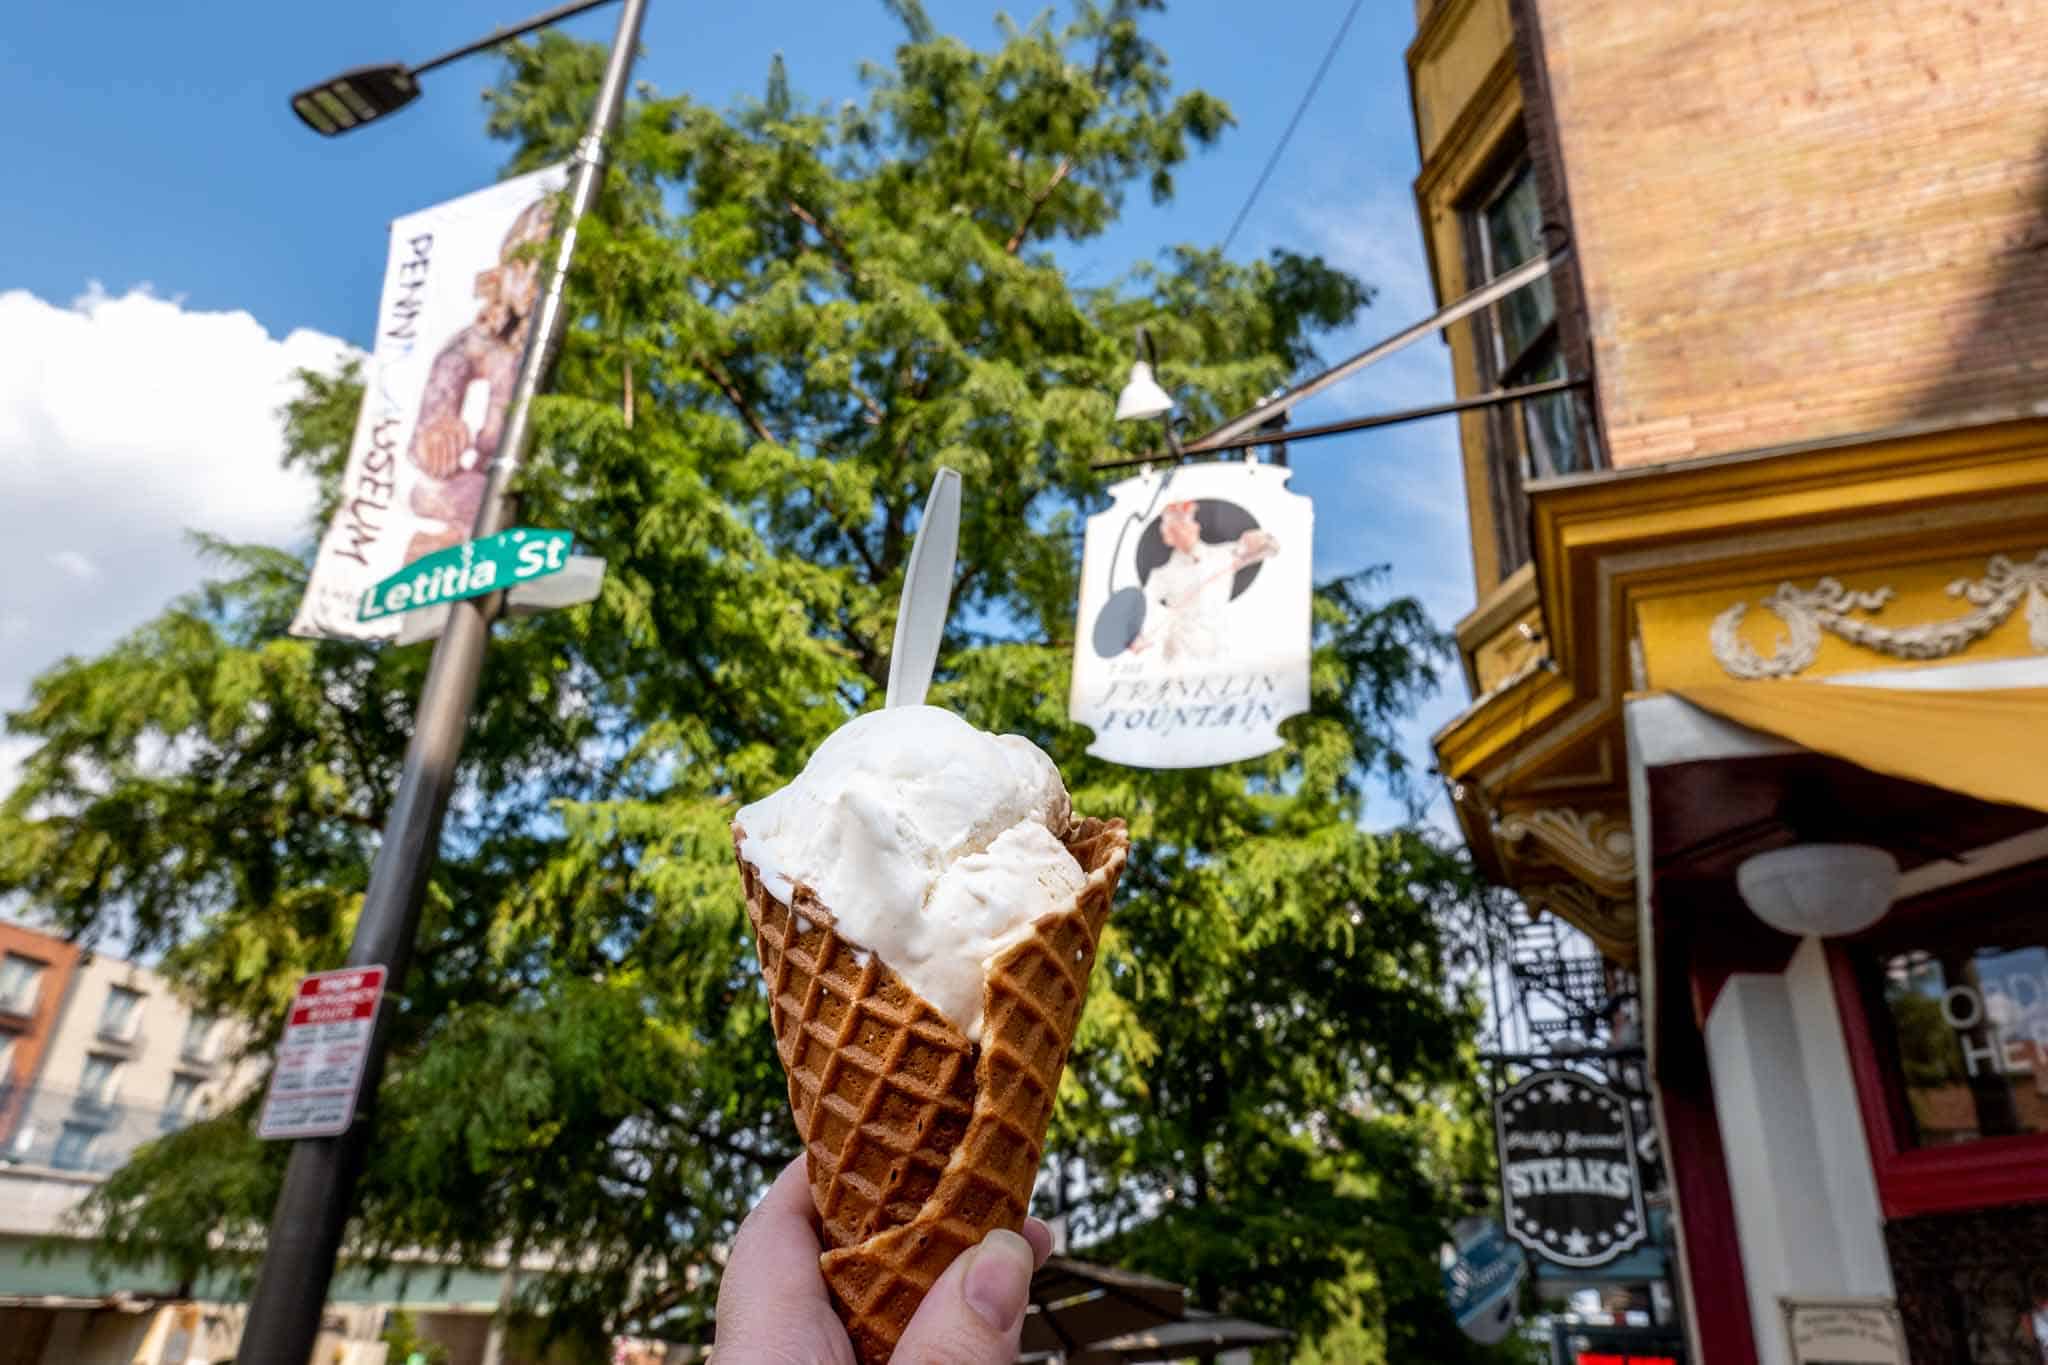 Ice cream cone in a street scene